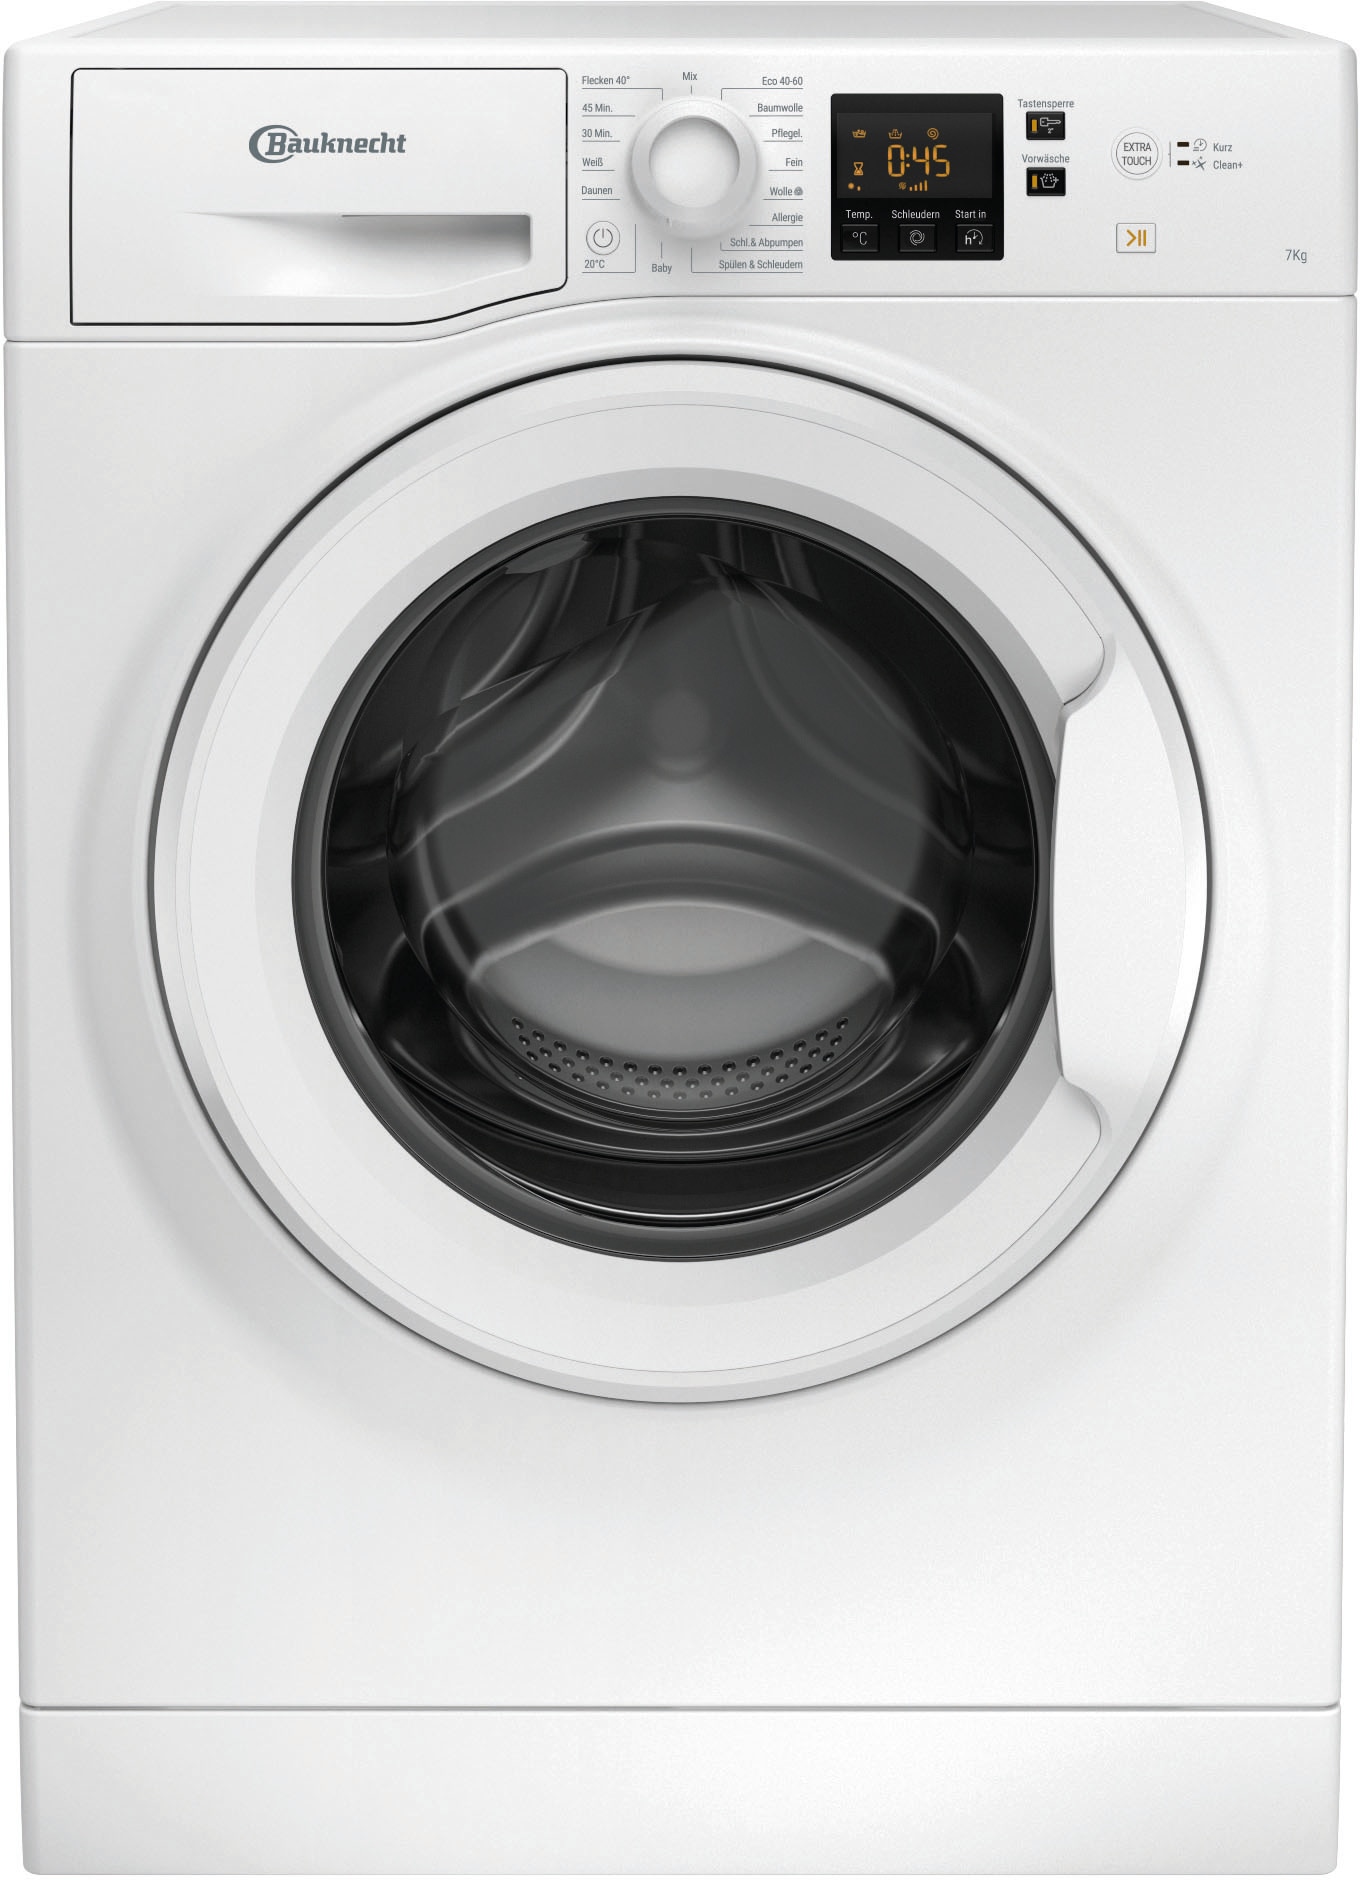 B«, WBP »WBP 7 BAUKNECHT Online B, 1400 U/min OTTO Waschmaschine jetzt Shop kg, im 714 714